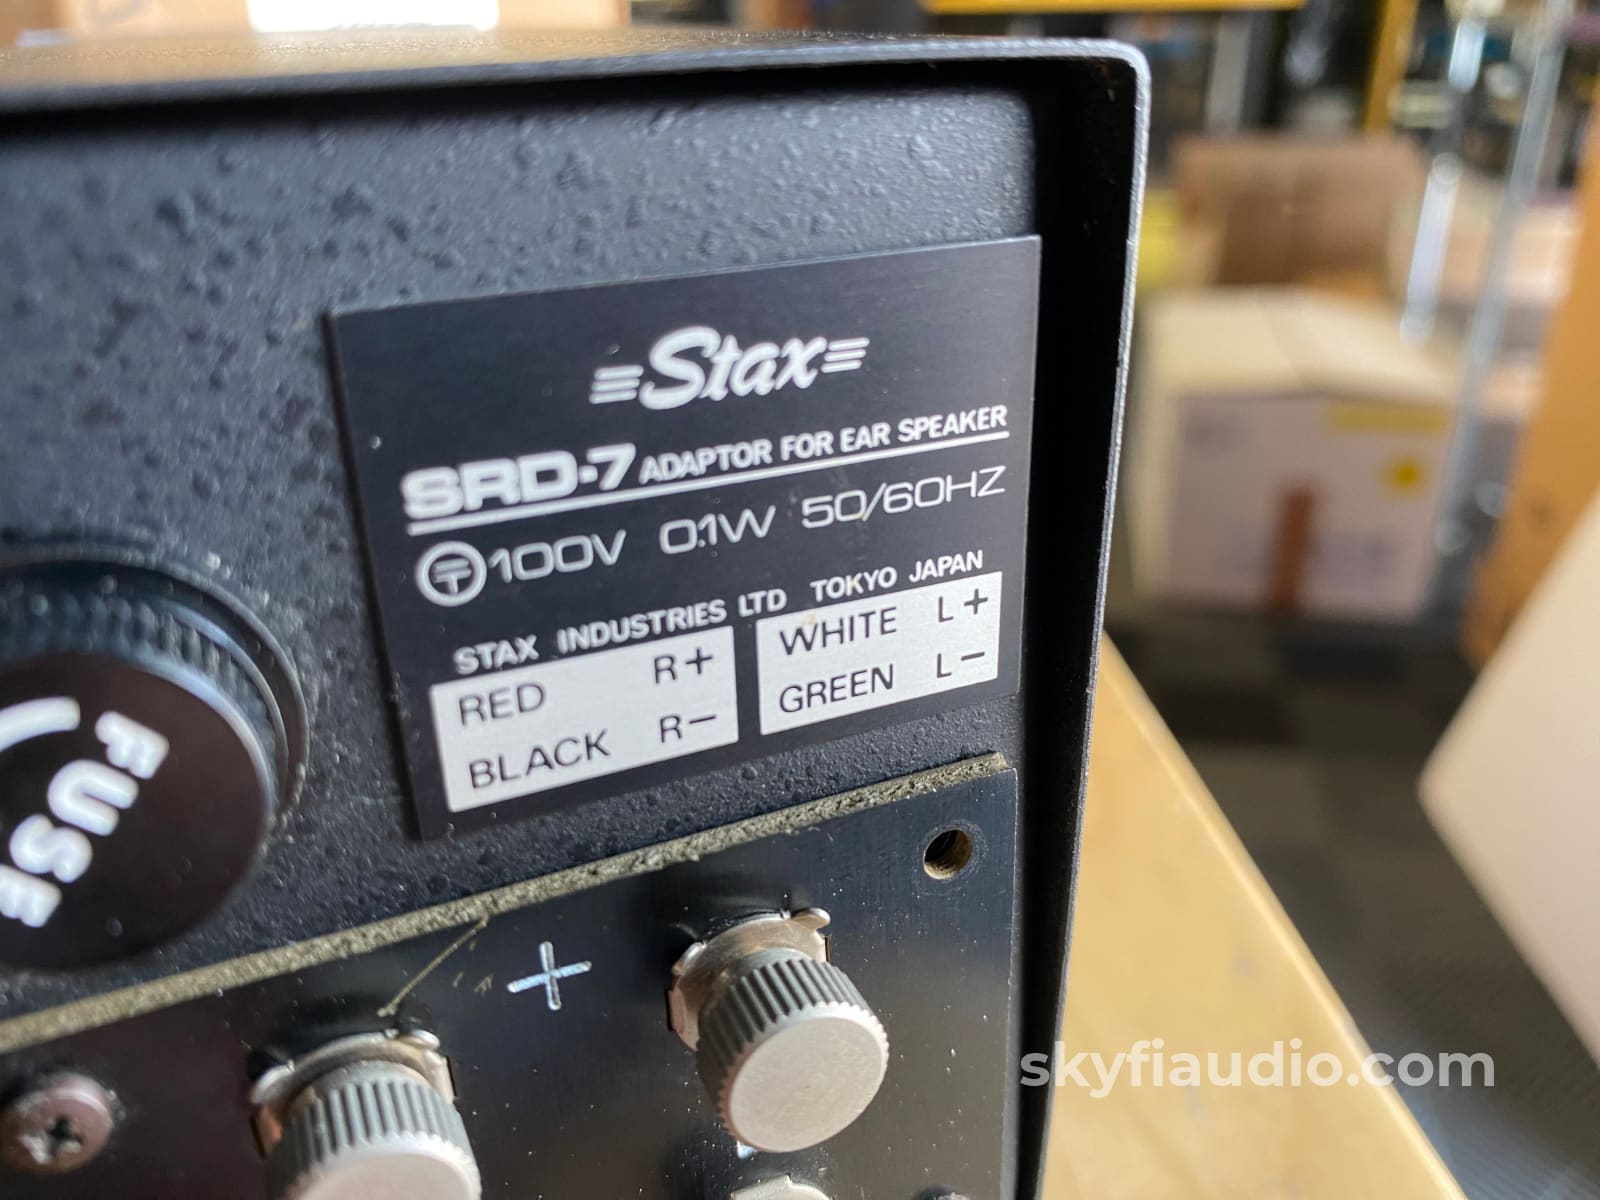 Stax Srd-7 Adapter For Ear Speaker - Electrostatic Headphone Amplifier In Box Accessory